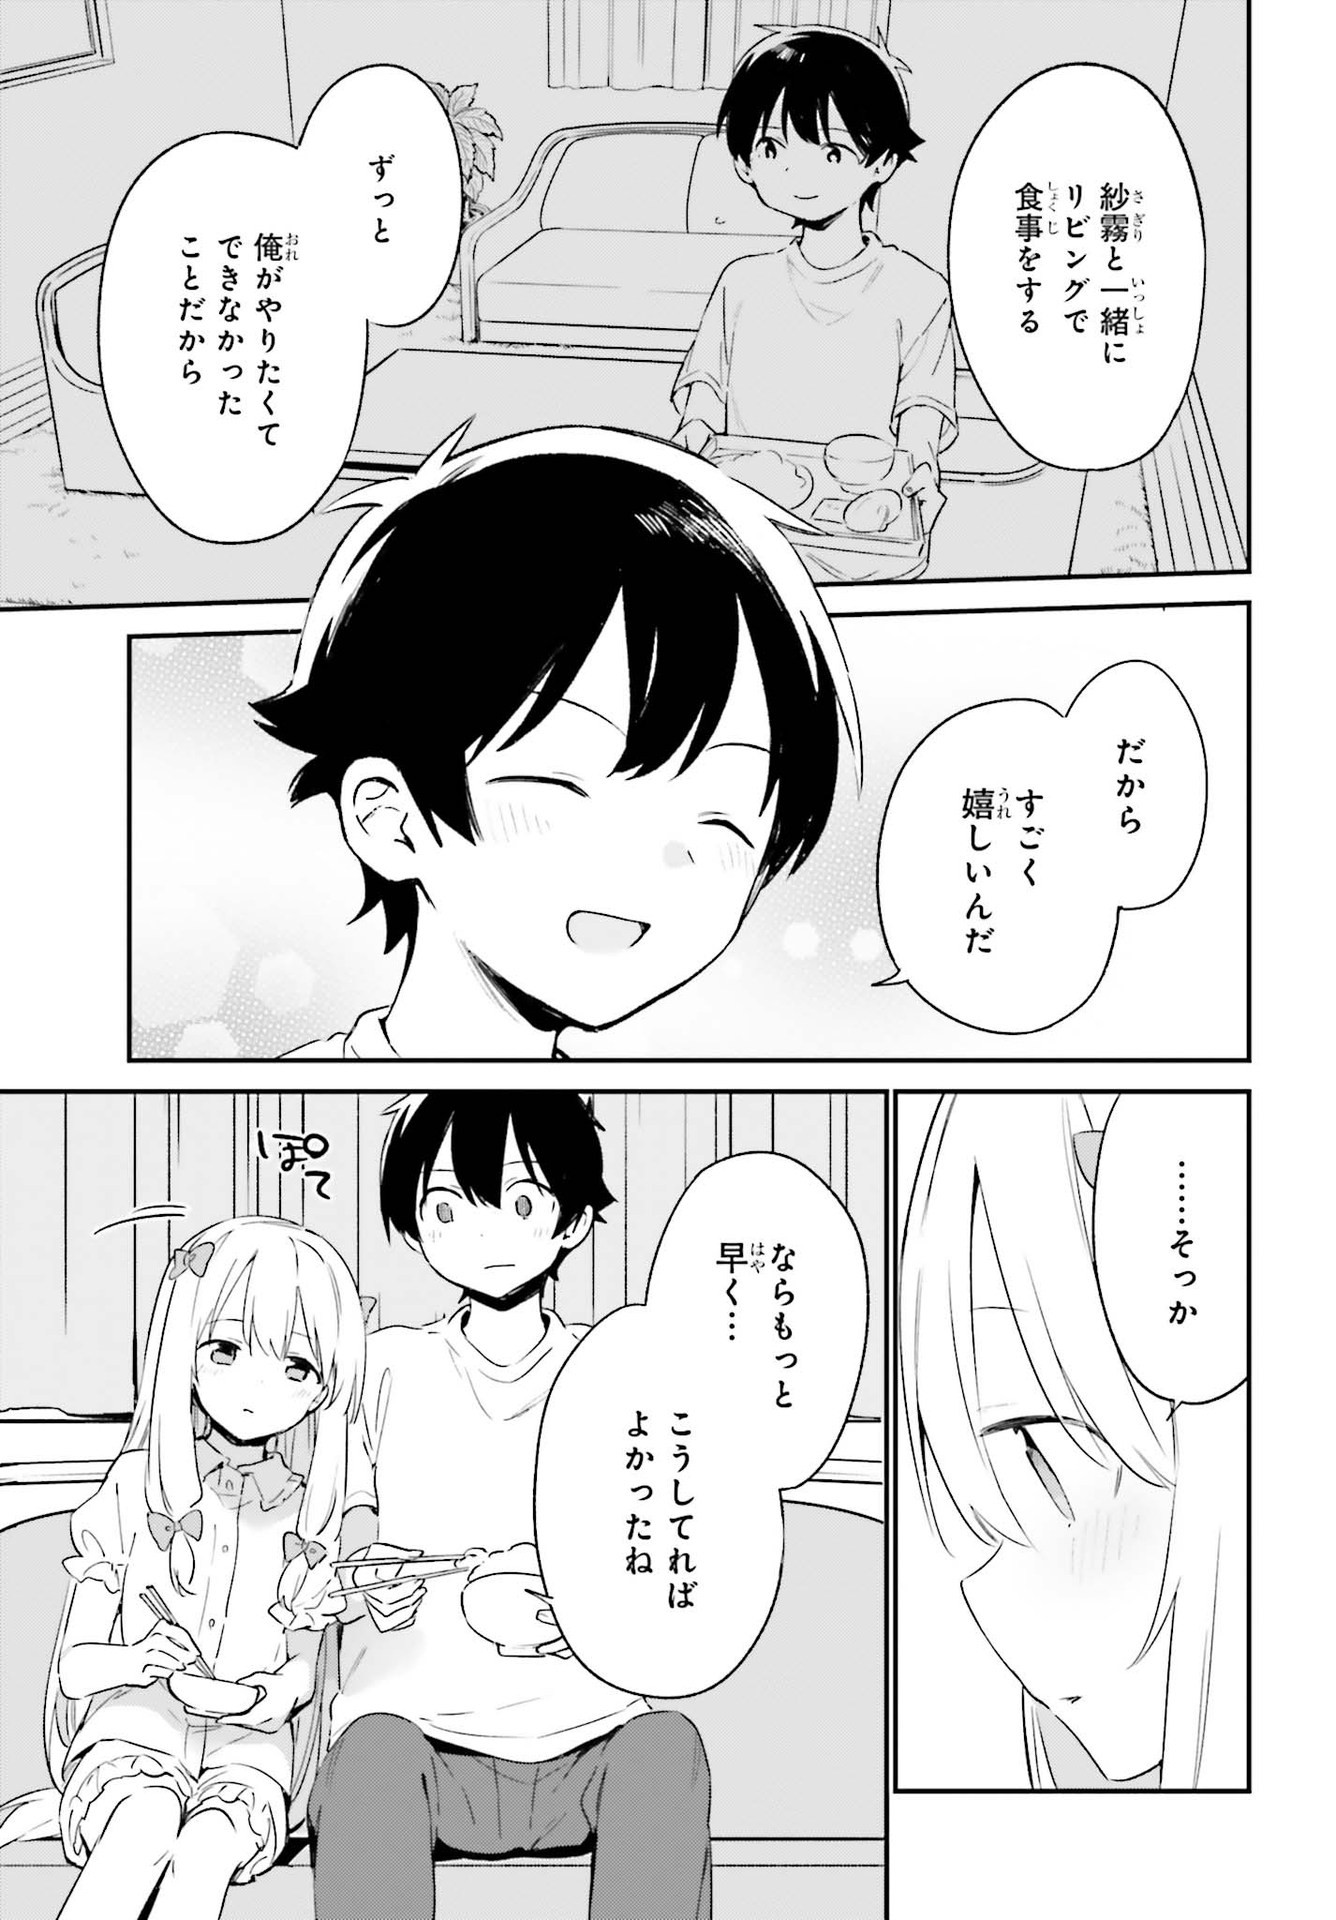 Ero Manga Sensei - Chapter 78 - Page 27